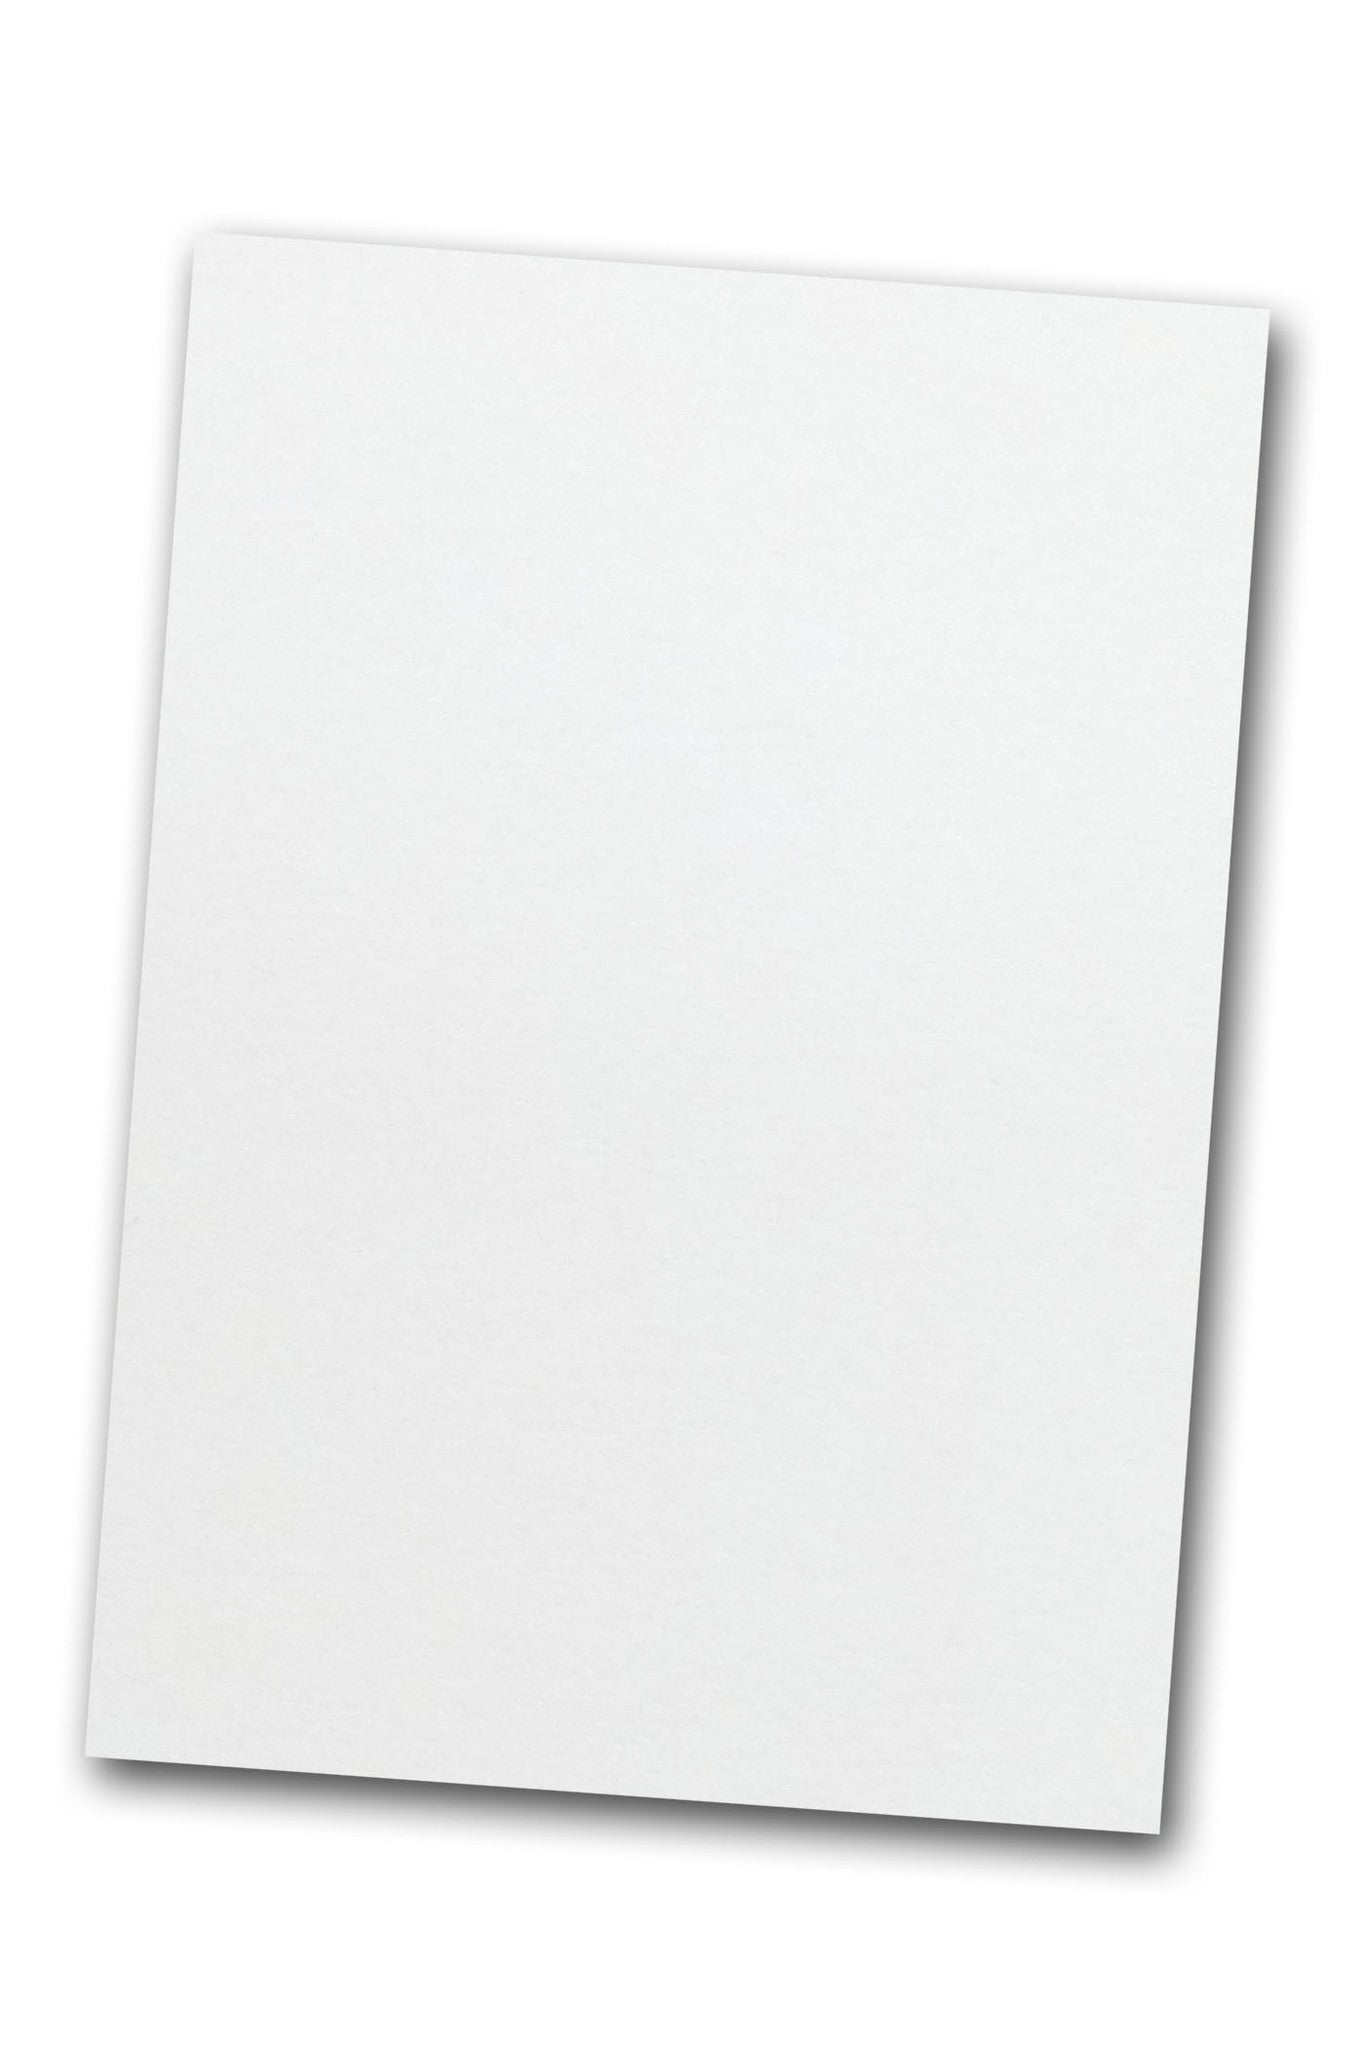 Premium Classic Linen Digital Printing Card Stock - CutCardStock